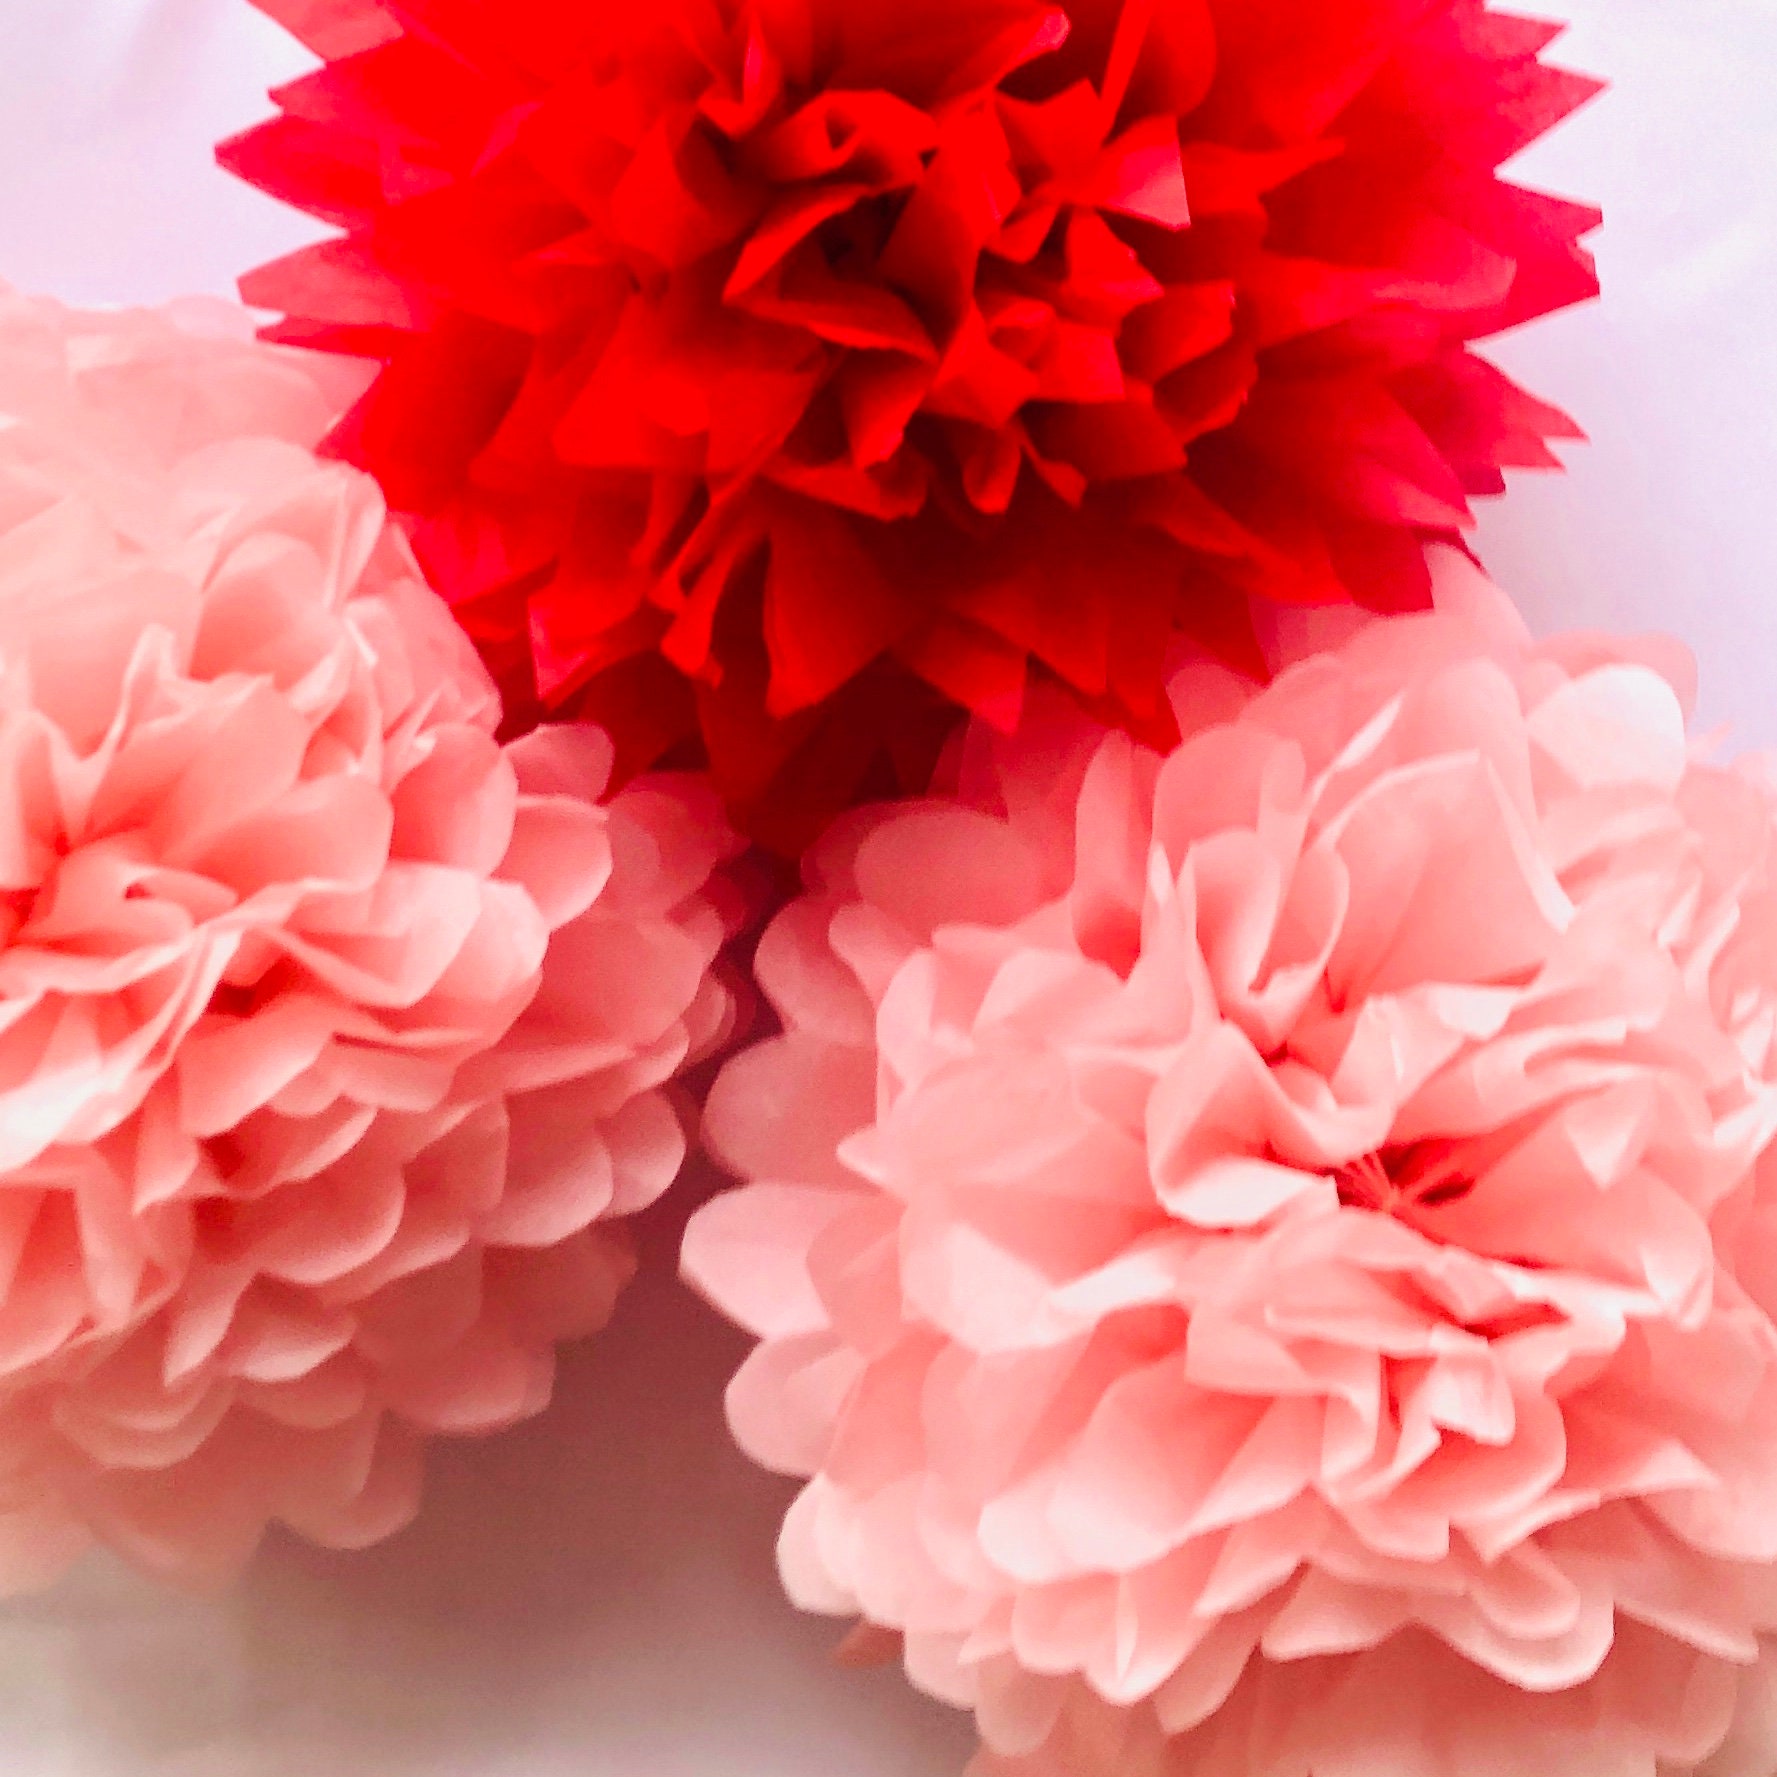 10 Pcs/lot Tissue Paper Pom Poms tissue Paper Flower Balls for